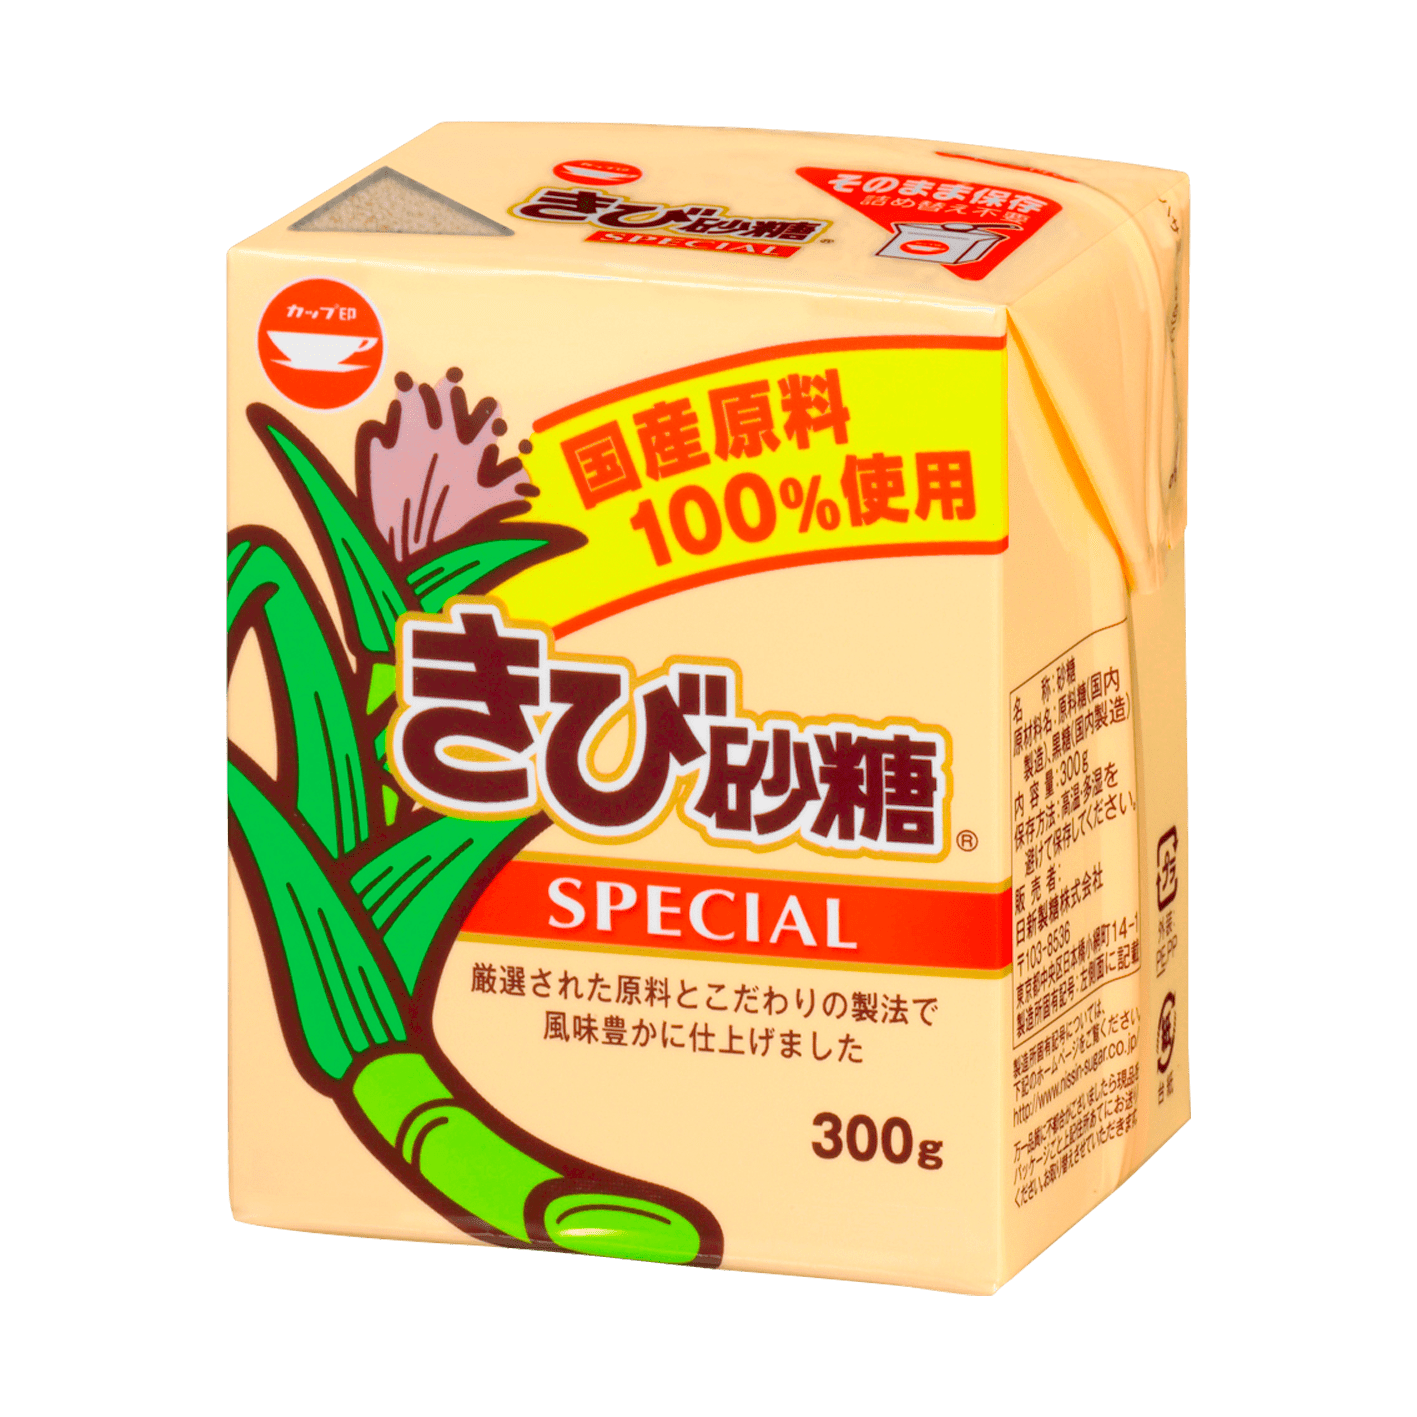 きび砂糖SPECIAL 300g（ボックスシュガーミニ）のイメージ